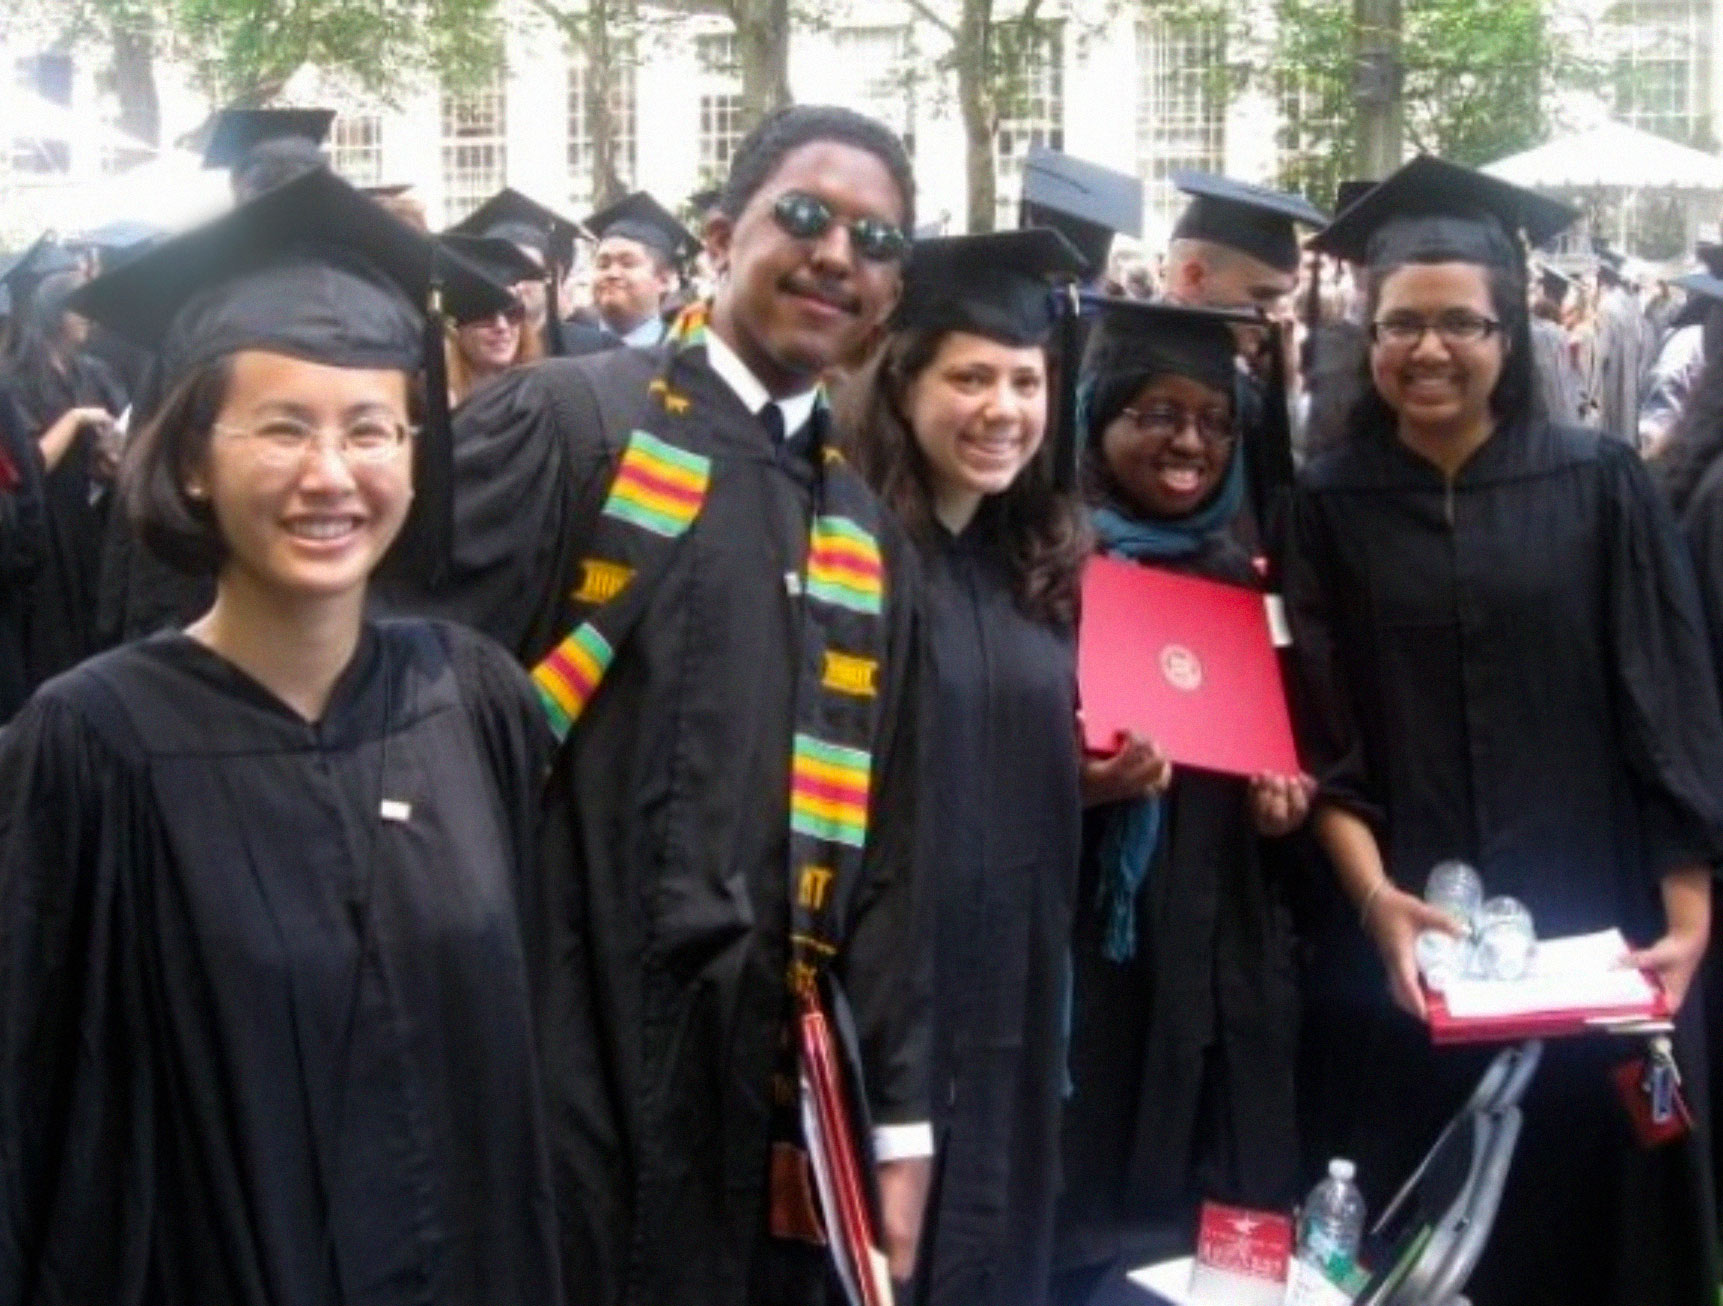 MIT alumni